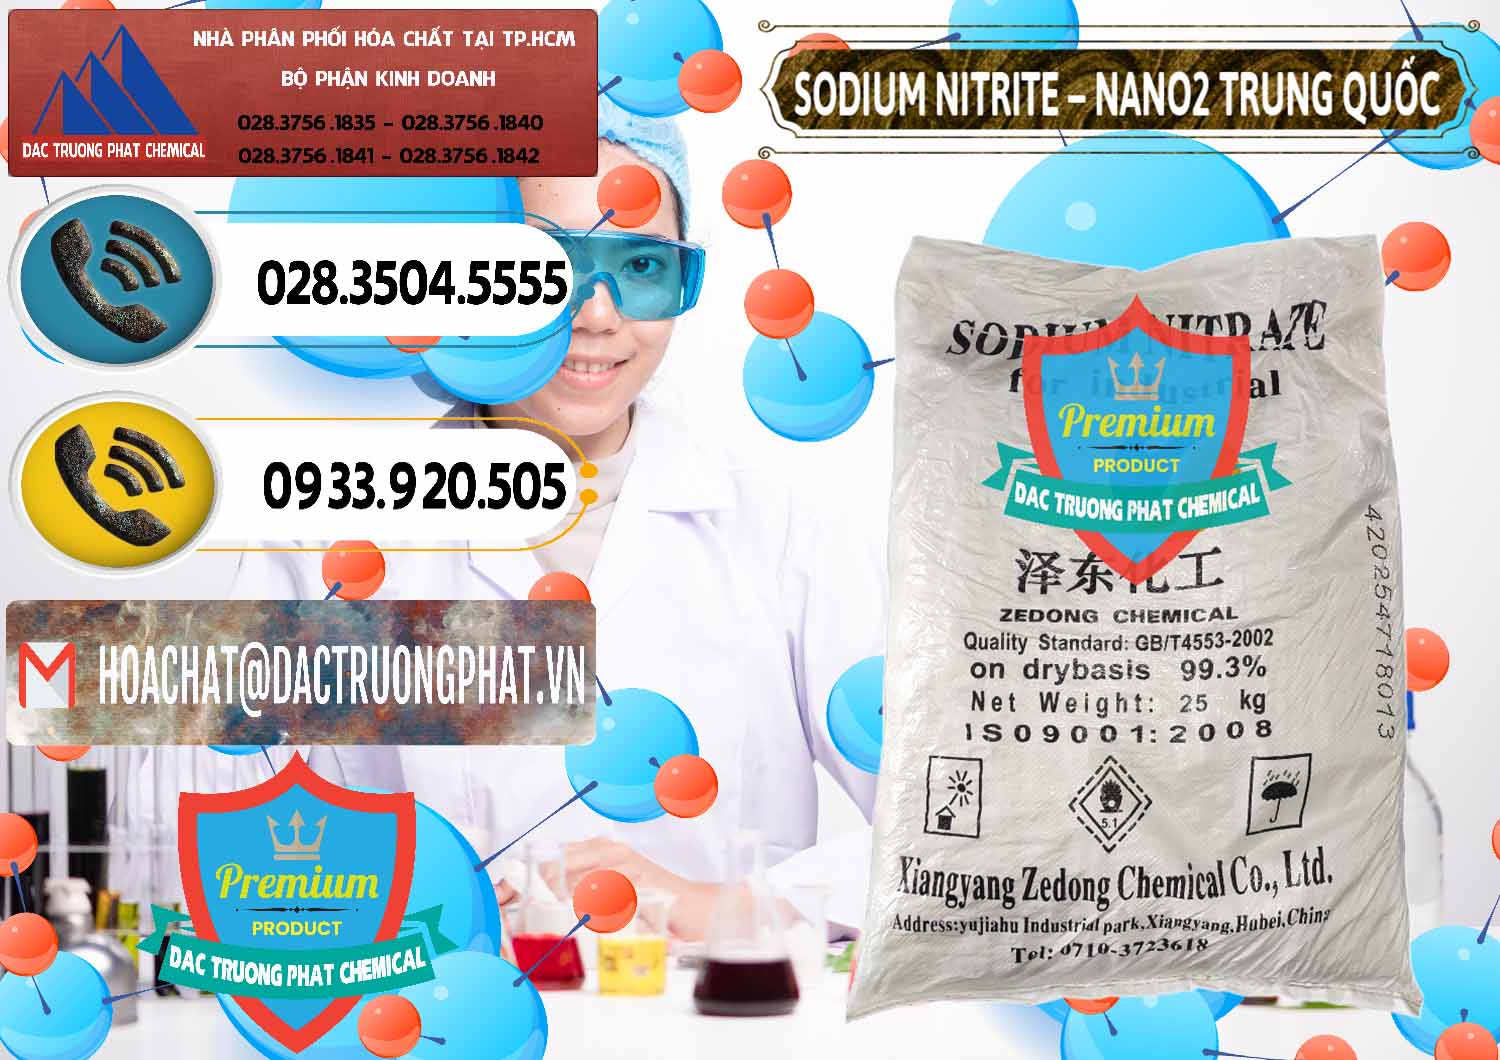 Công ty nhập khẩu - bán Sodium Nitrite - NANO2 Zedong Trung Quốc China - 0149 - Nhà cung ứng _ phân phối hóa chất tại TP.HCM - hoachatdetnhuom.vn